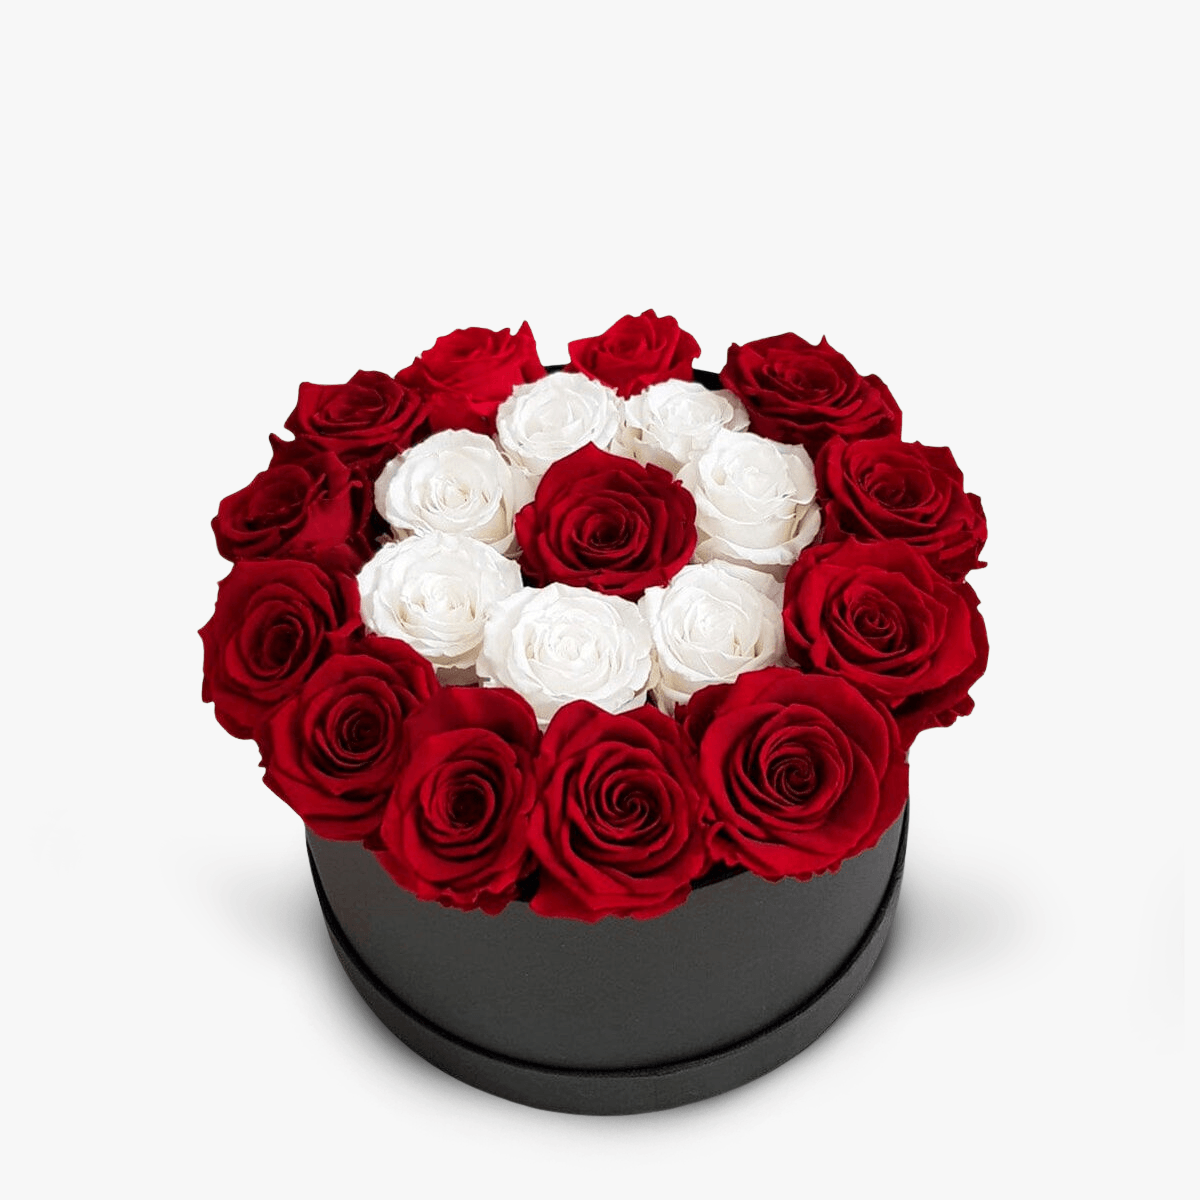 Cutie cu 23 trandafiri rosii si albi criogenati Cutie cu 23 trandafiri rosii si albi criogentai – Standard albi imagine 2022